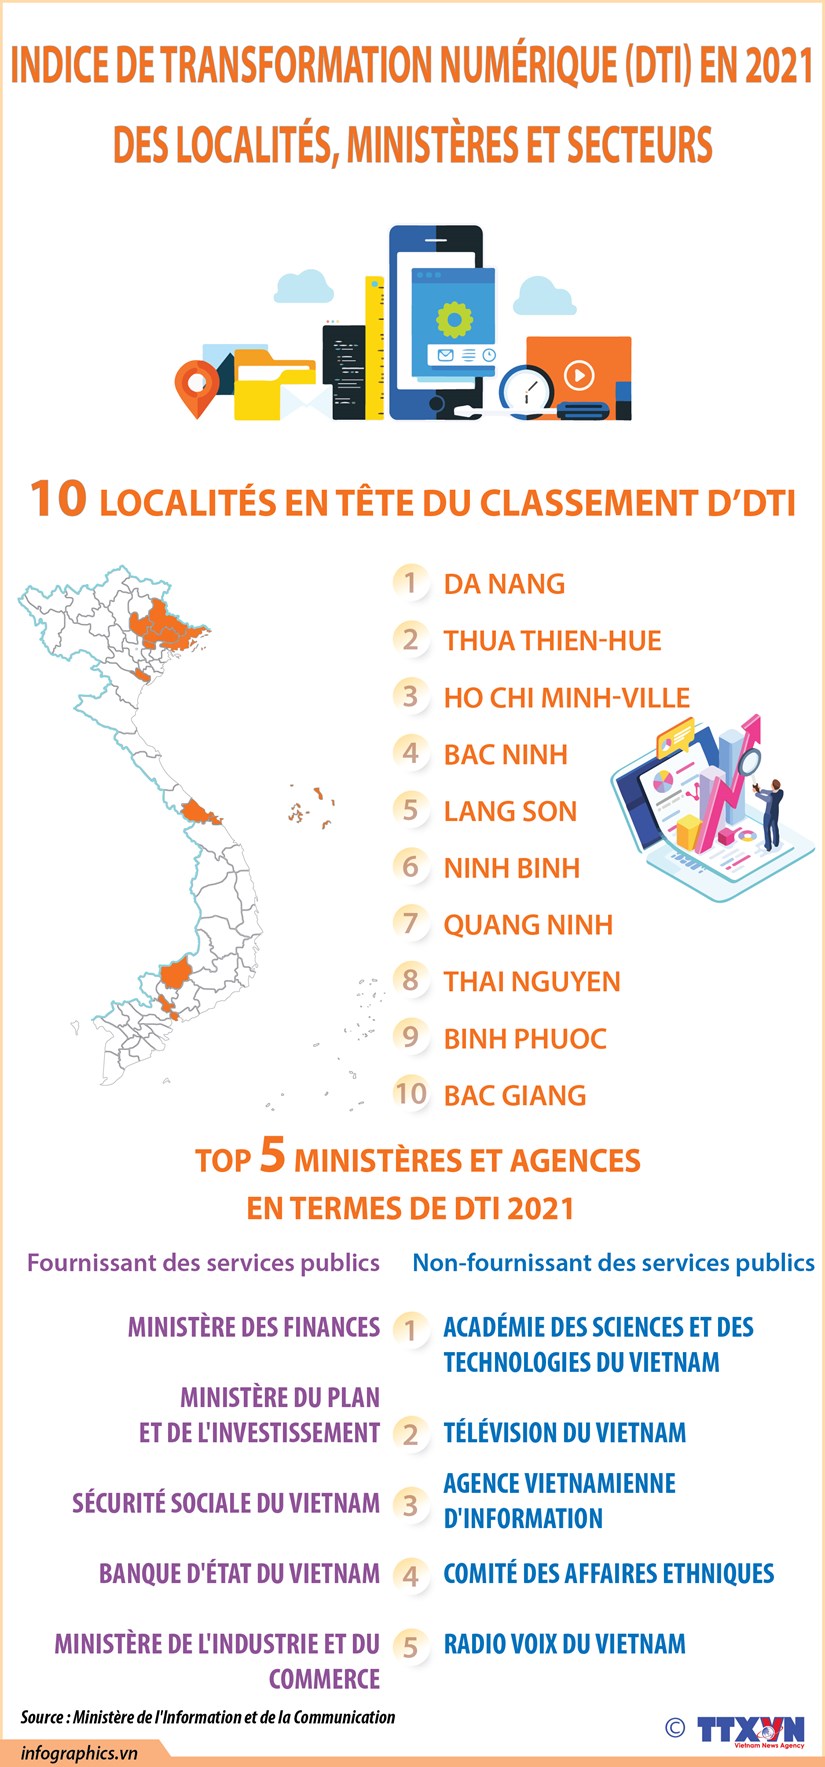 Indice de transformation numerique (DTI) en 2021 des localites, ministeres et secteurs hinh anh 1